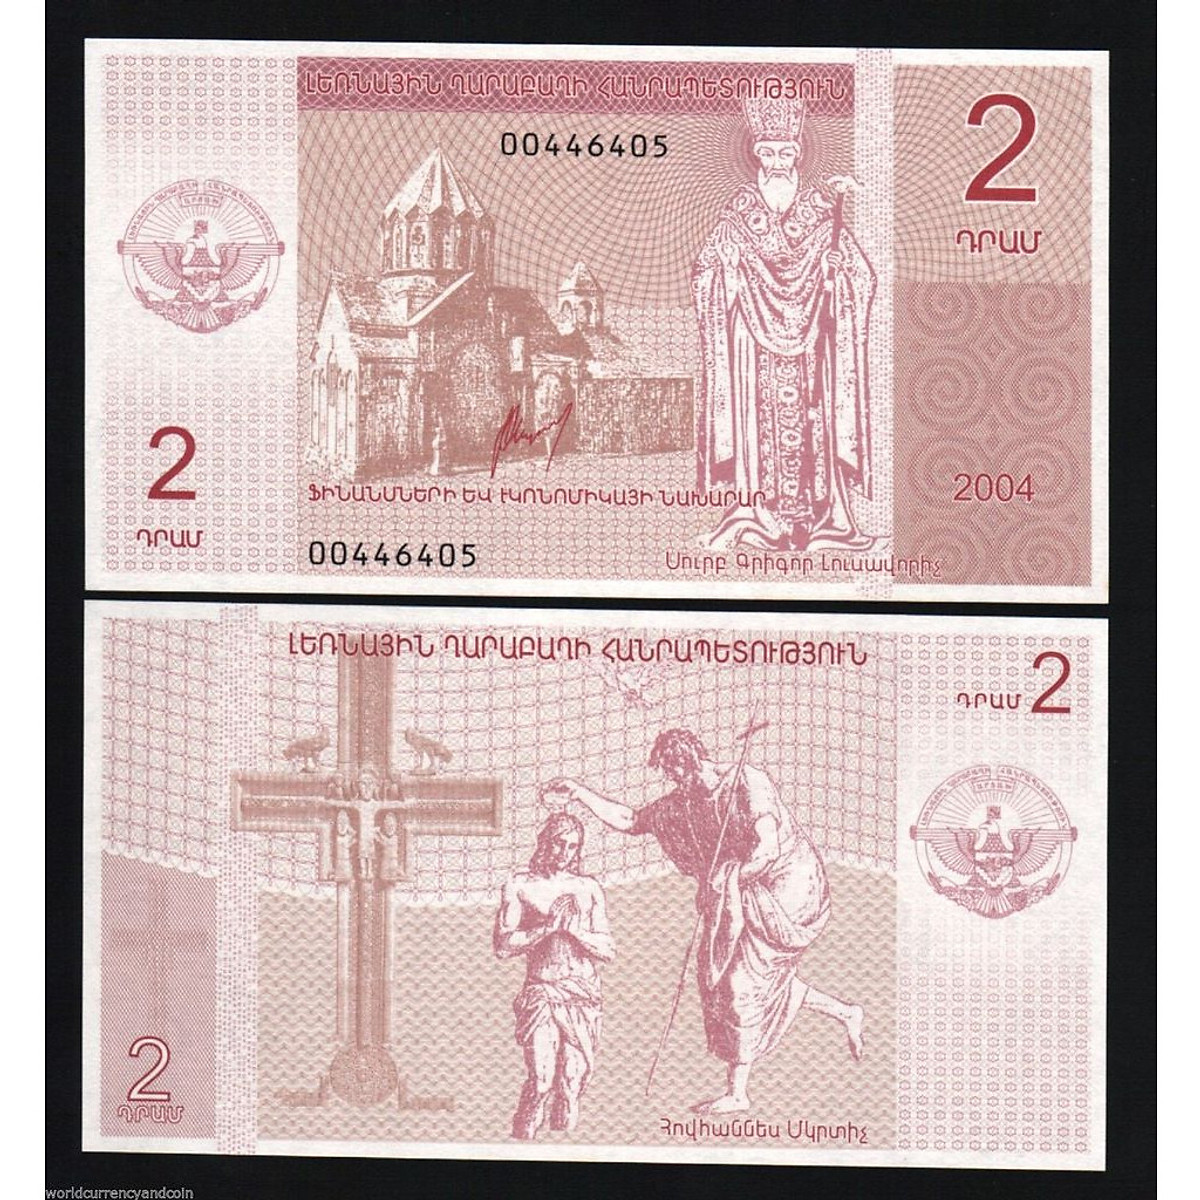 Tiền in Chúa Jesus của Nagorno Karabakh 2 dram - Tiền mới keng 100% - Tặng túi nilon bảo quản